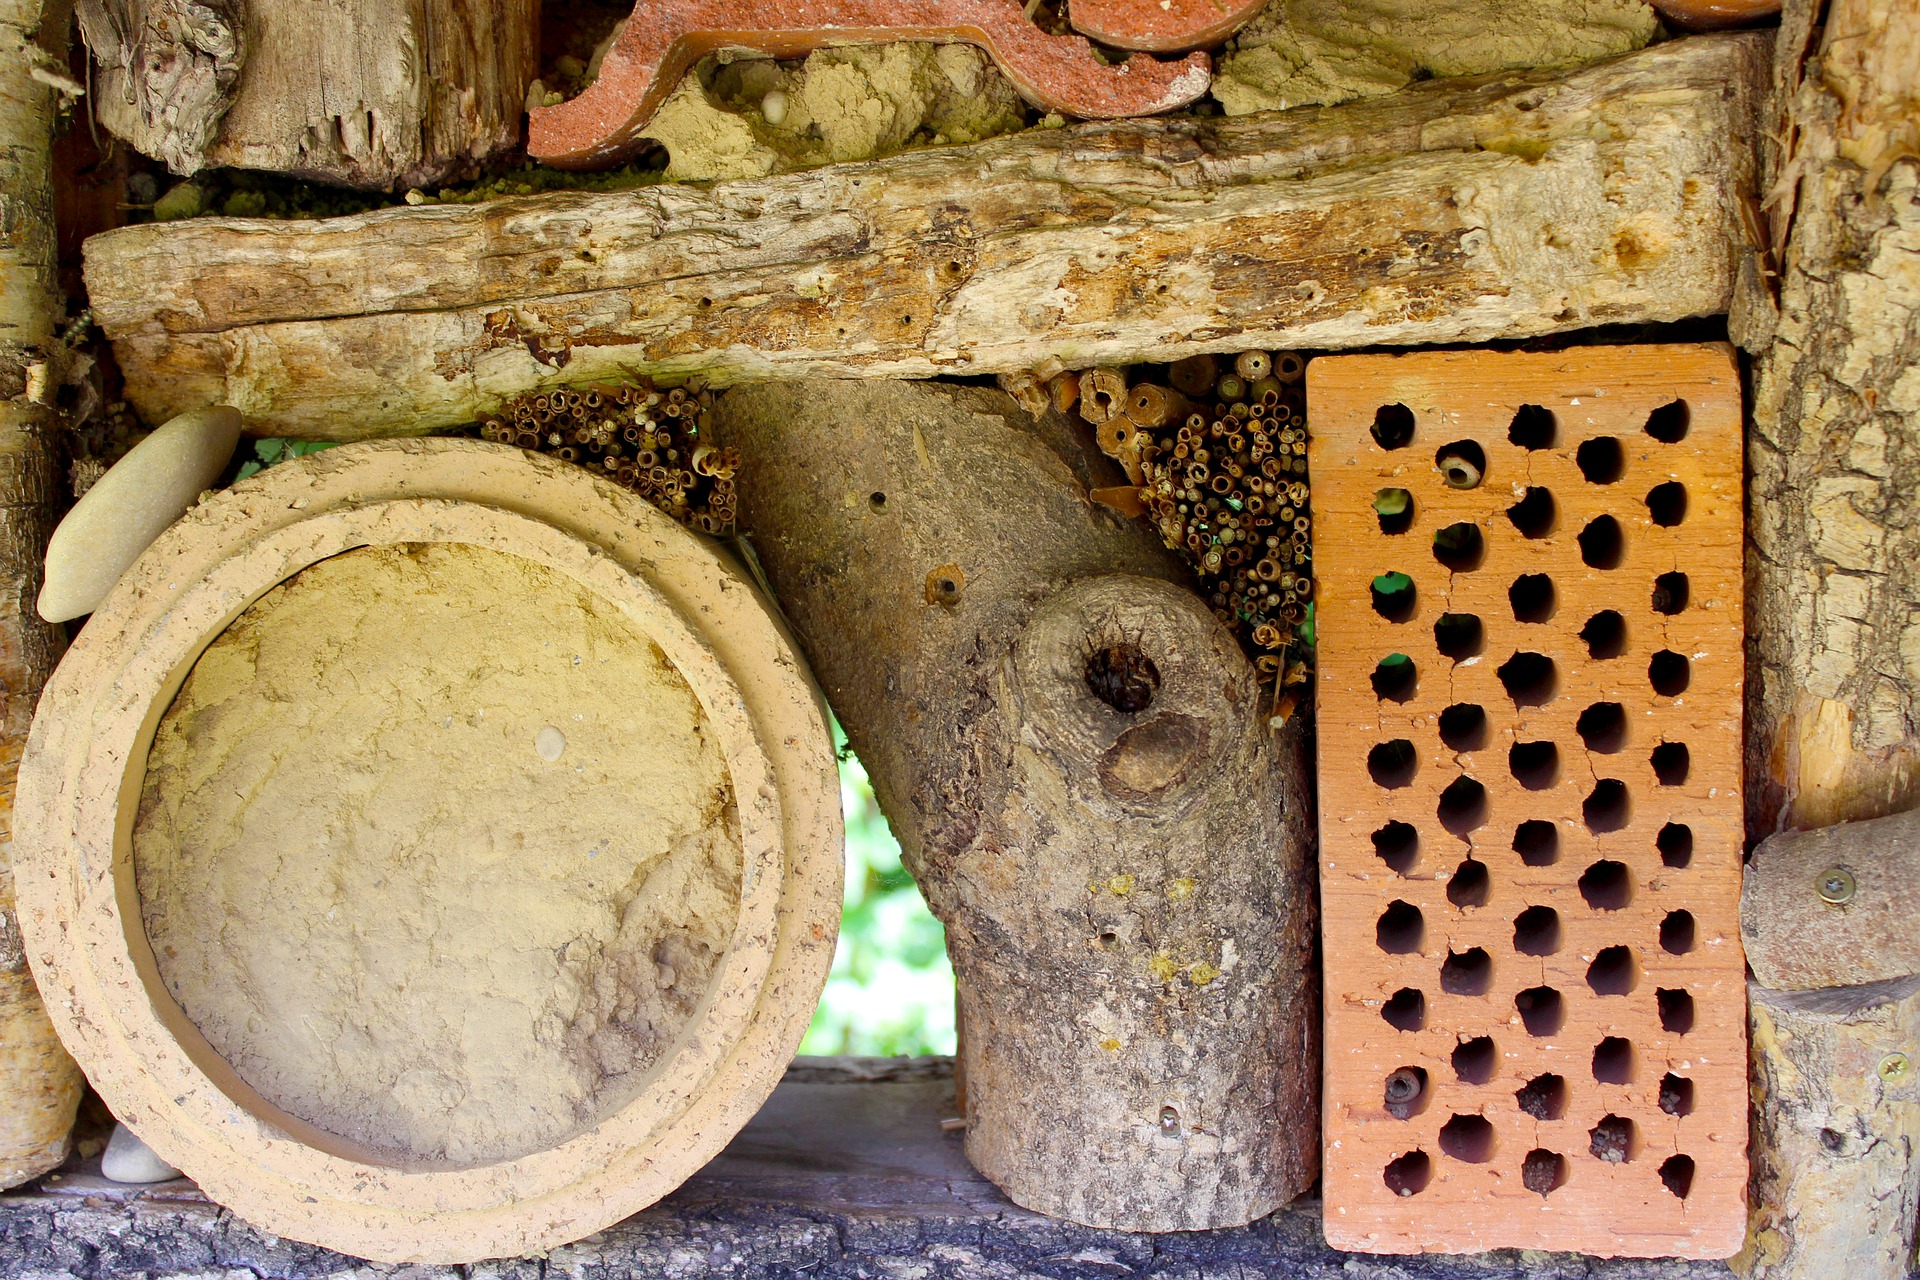 Aides les abeilles sauvages: Hôtel à insectes